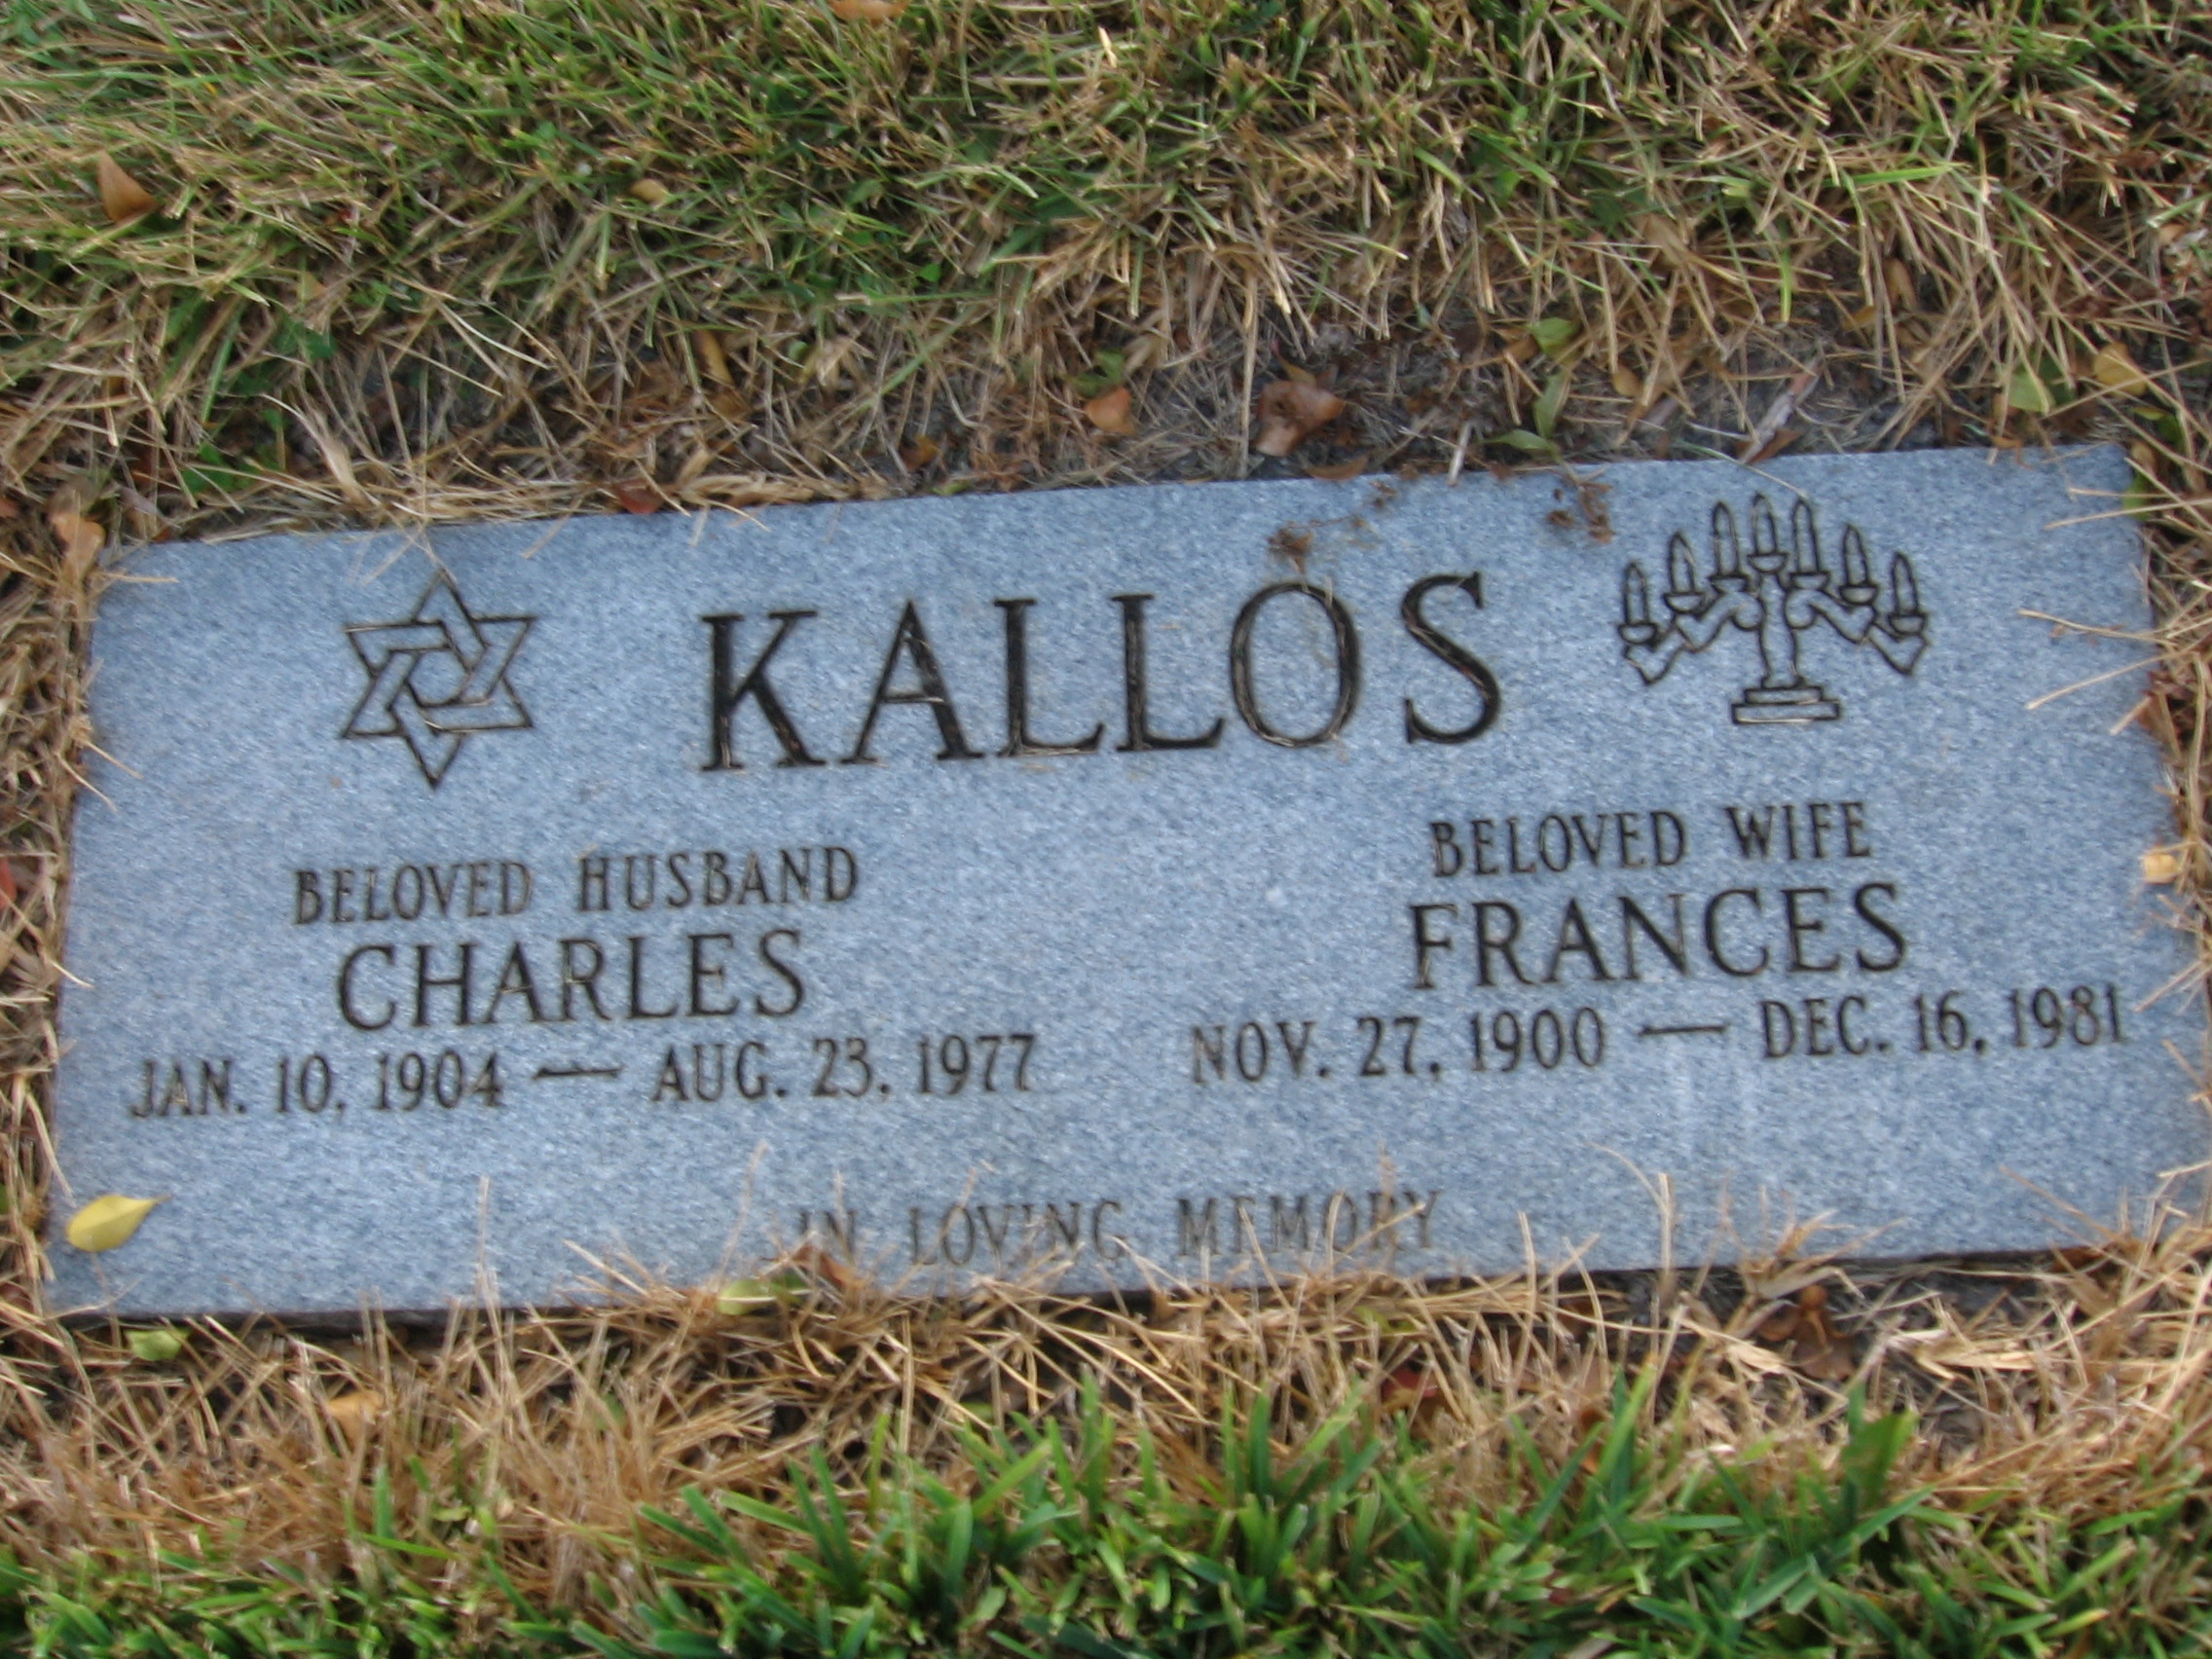 Charles Kallos